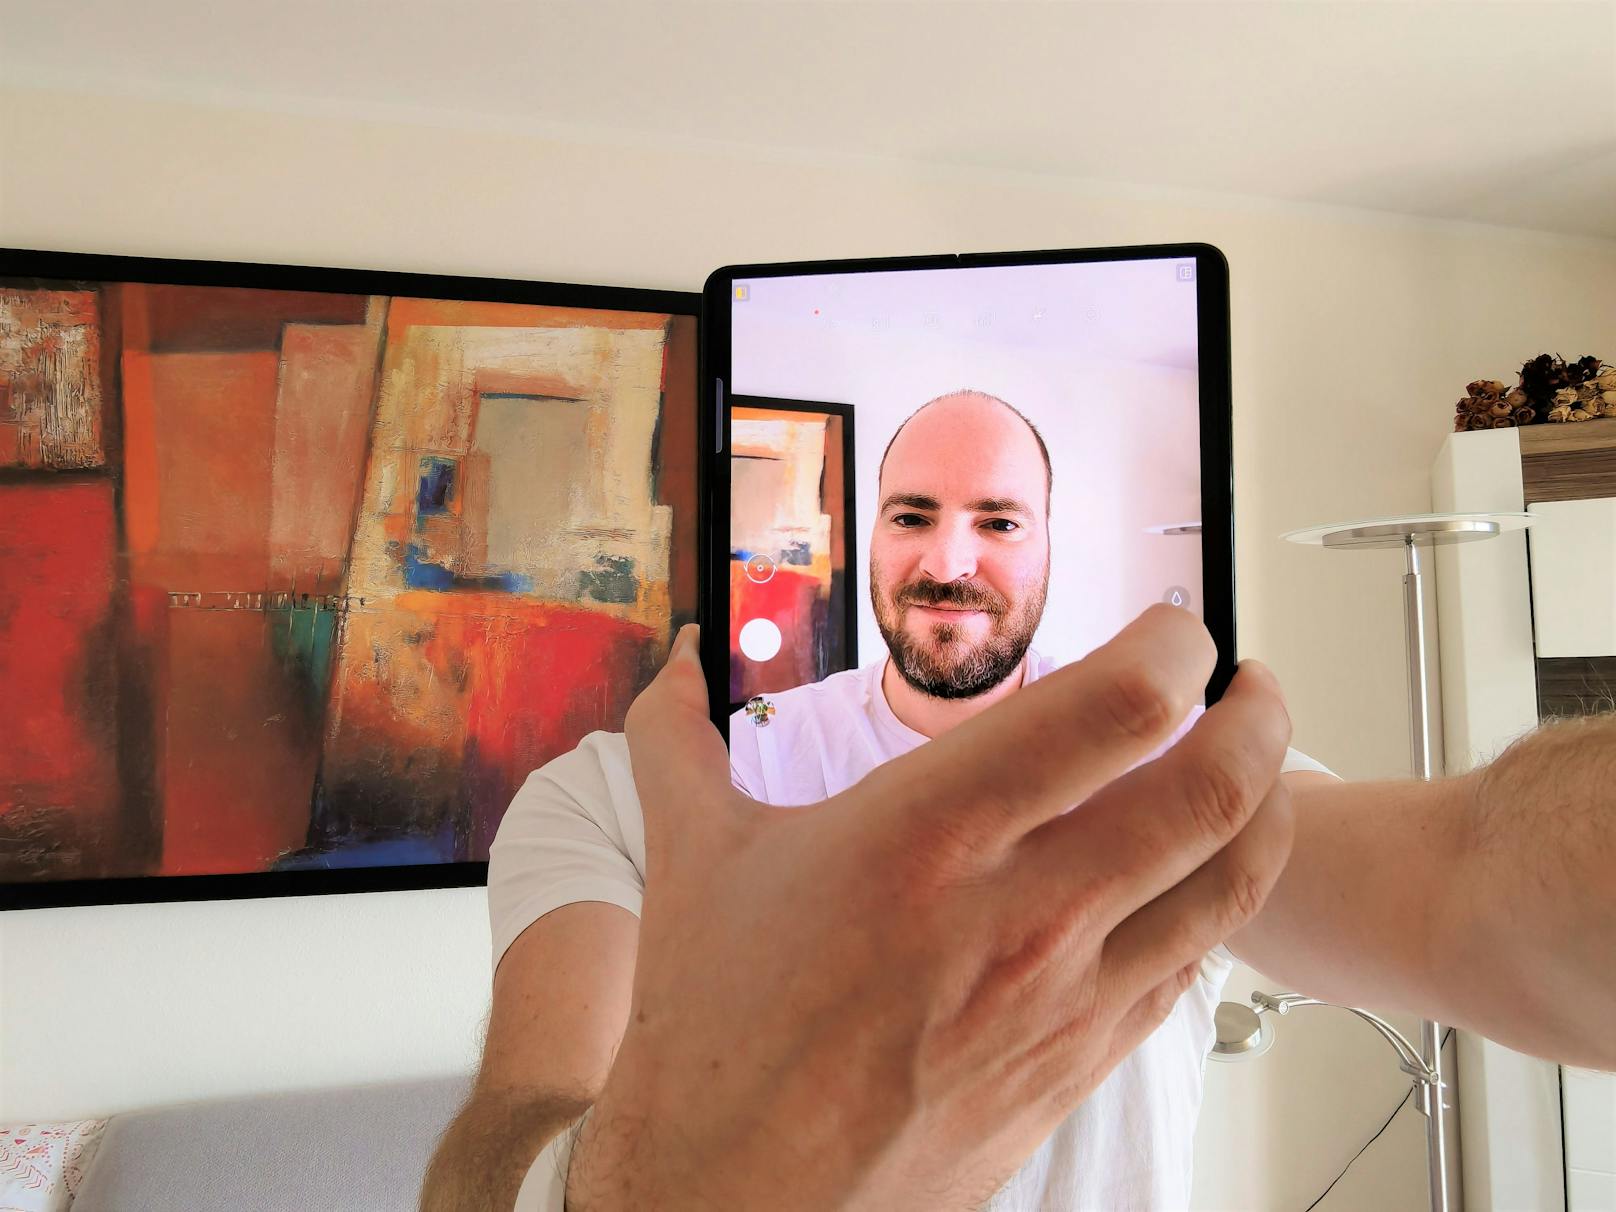 Das Kamerabild wird dann auf beiden Display gleichzeitig angezeigt und der Nutzer kann den Außenbildschirm als Kamera-Sucher verwenden. Das klappt mit etwas Fingerspitzengefühlt perfekt und liefert weit bessere Selfie-Bilder ab.